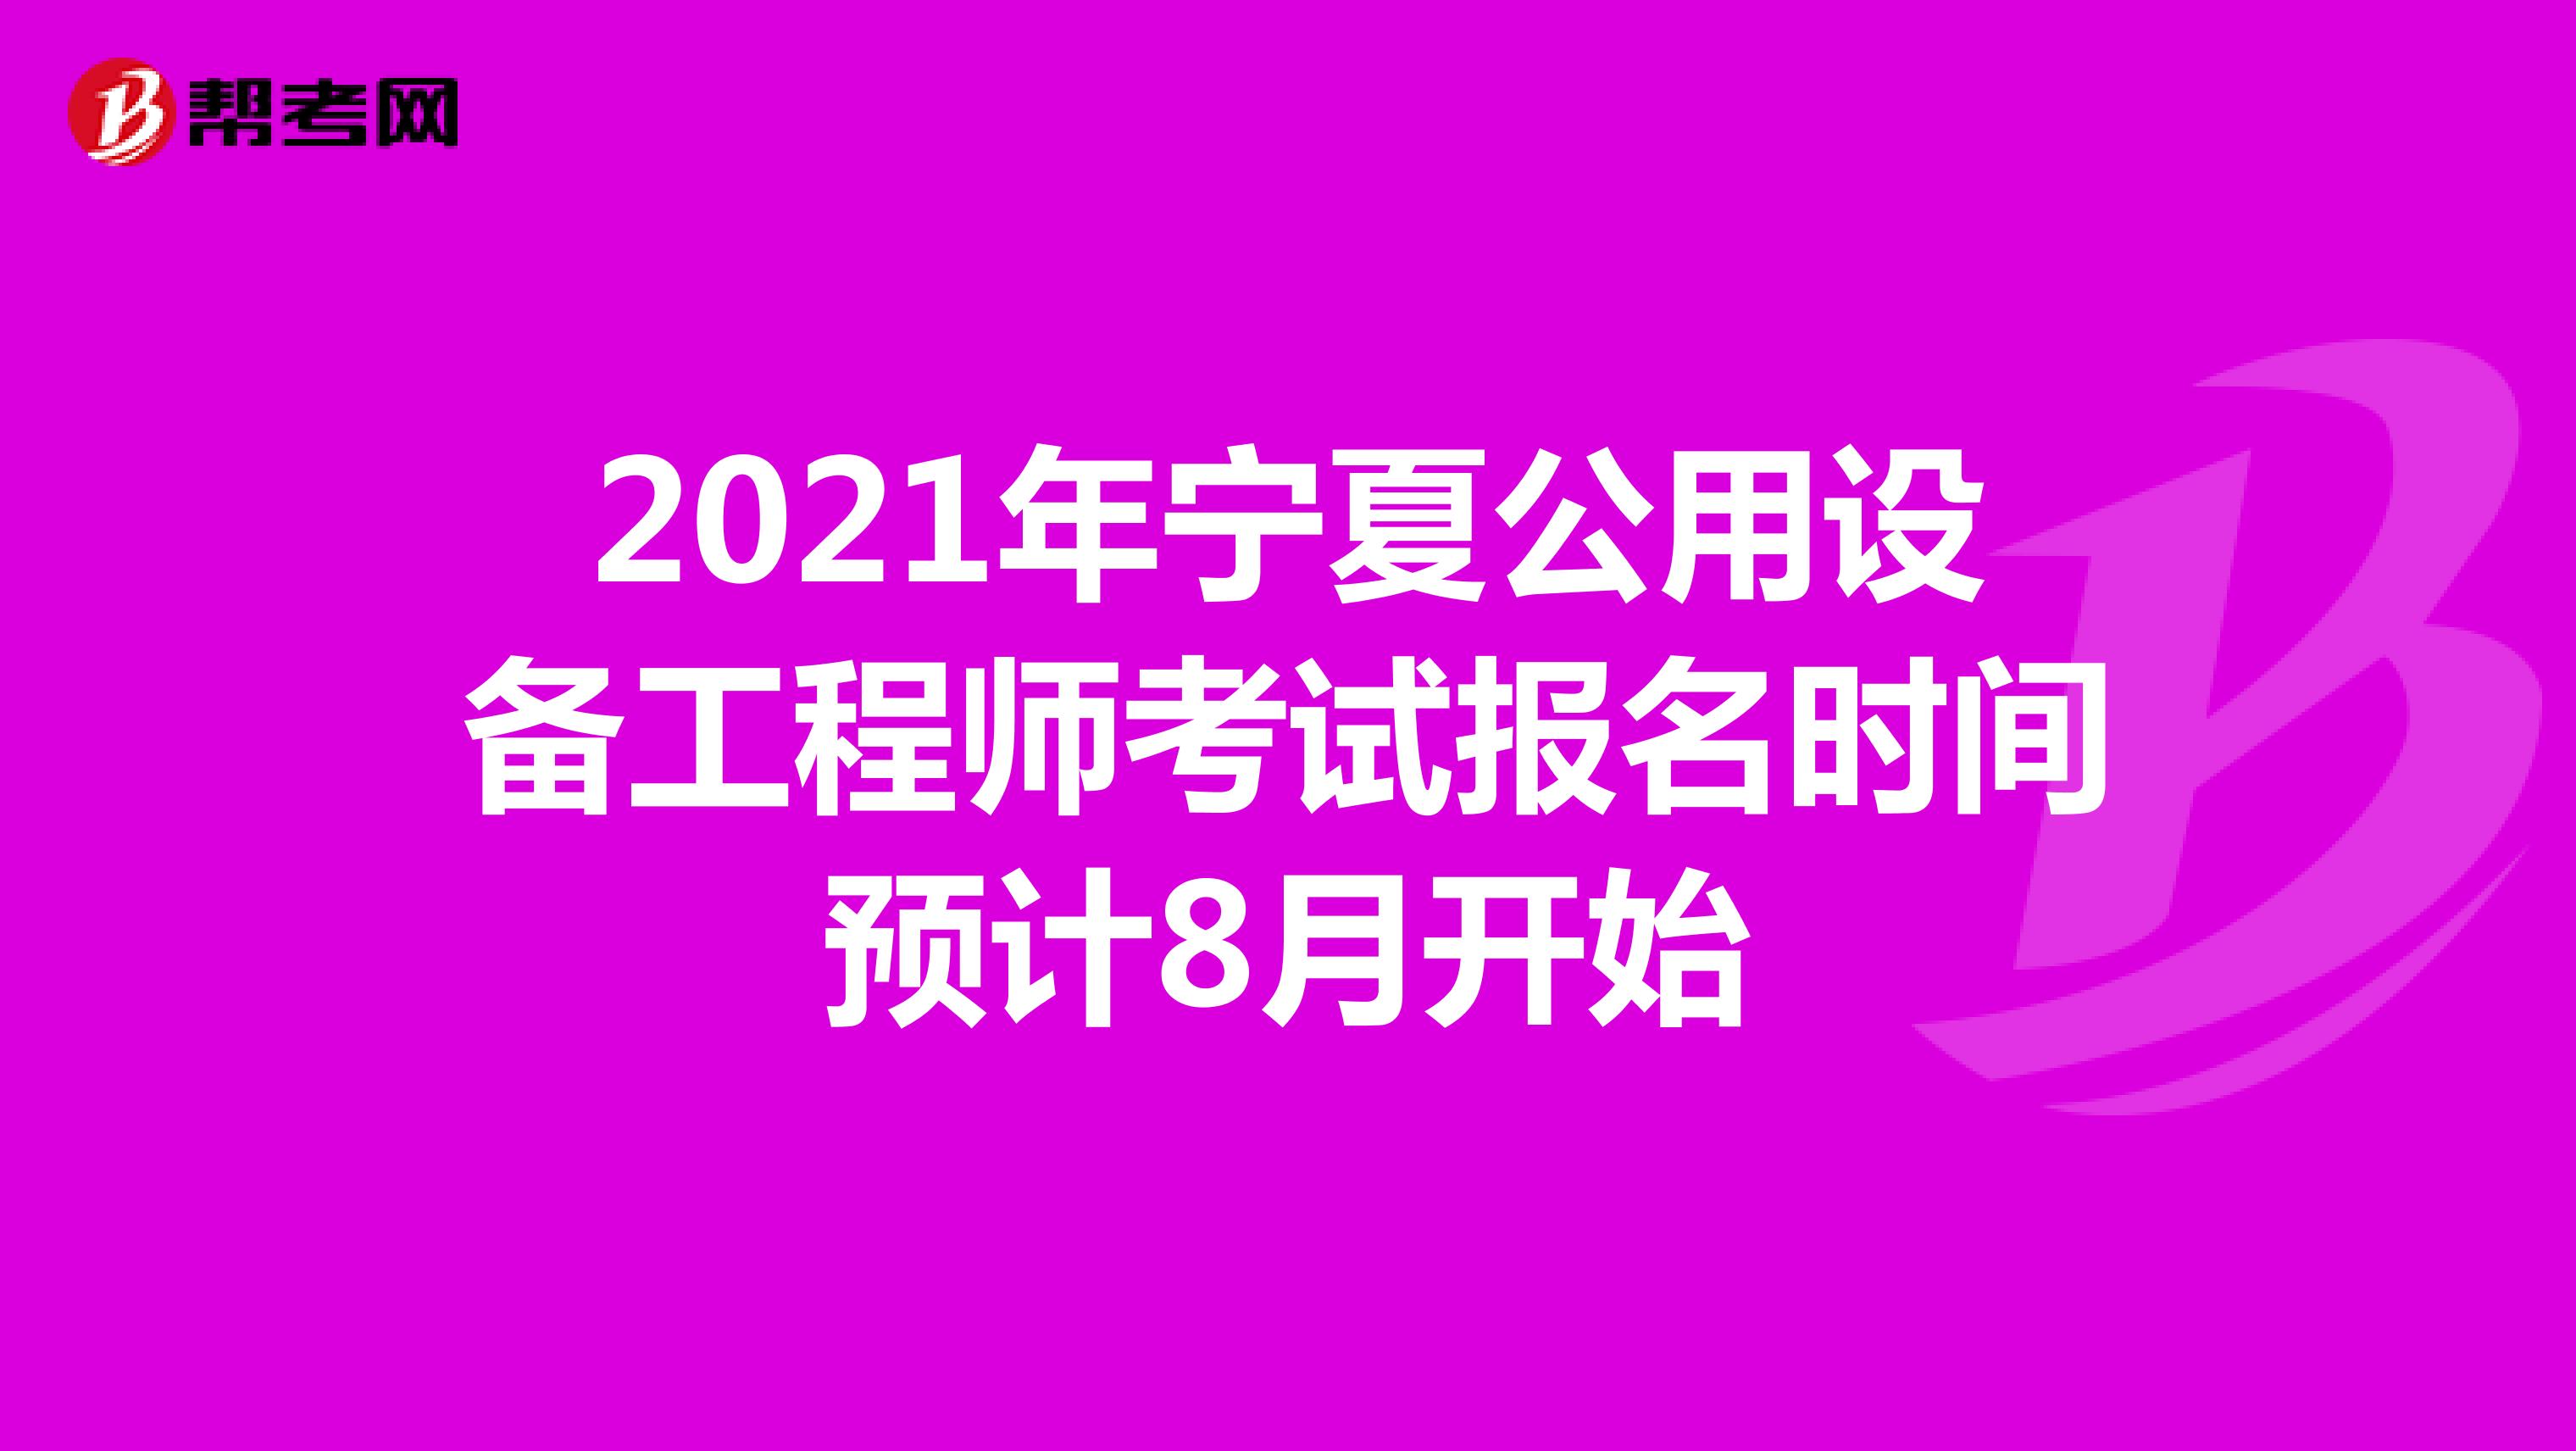 2021年宁夏公用设备工程师考试报名时间预计8月开始